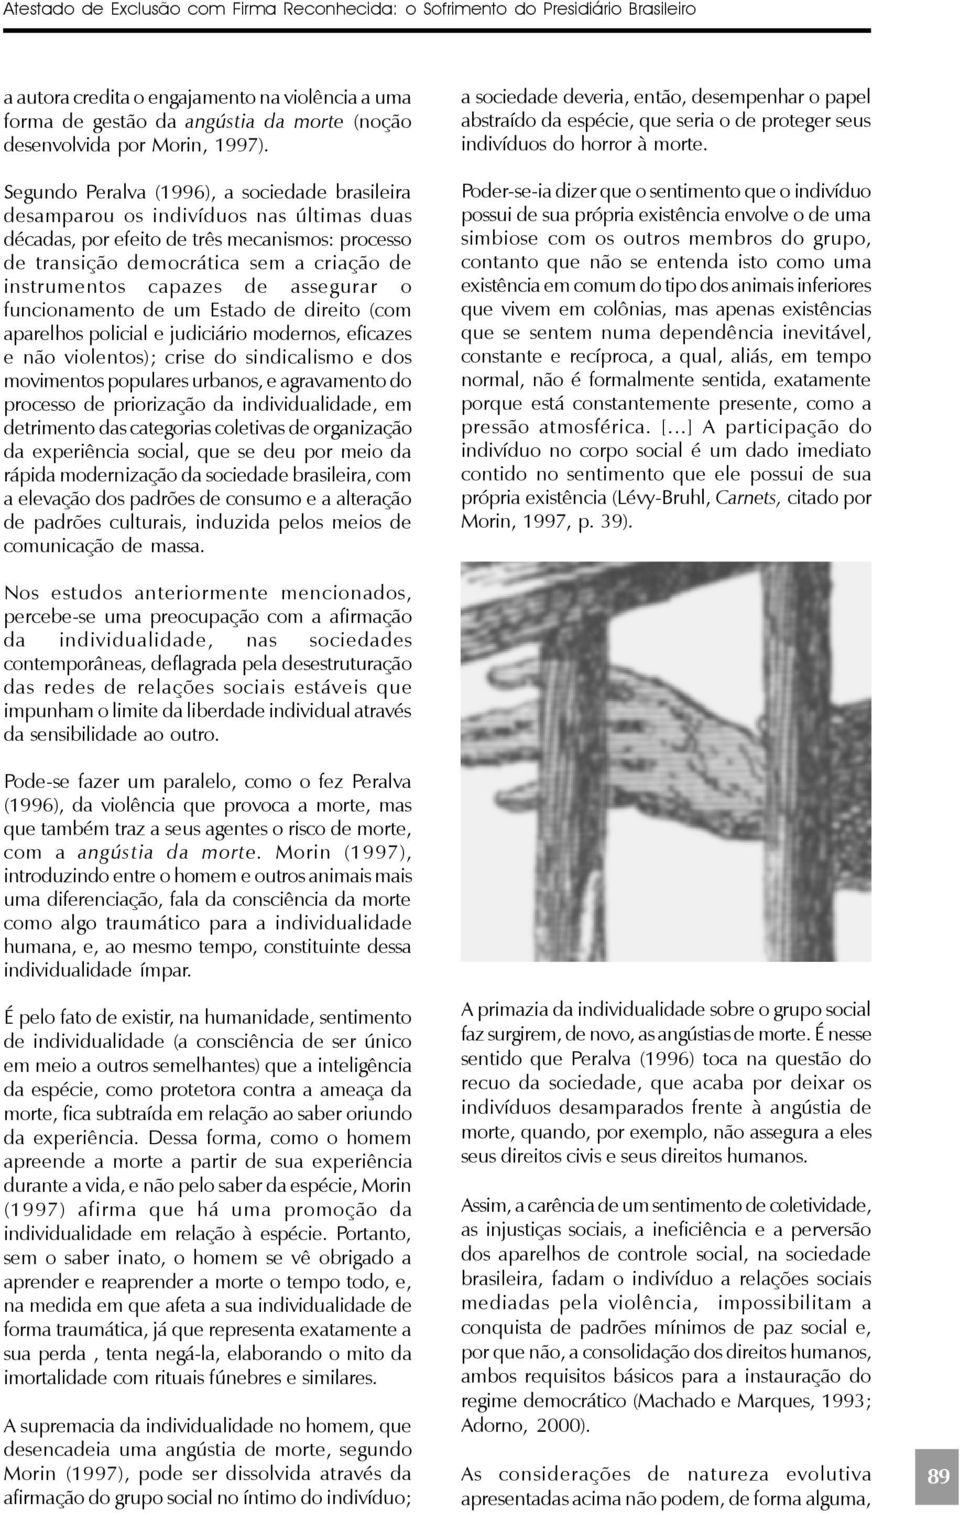 Segundo Peralva (1996), a sociedade brasileira desamparou os indivíduos nas últimas duas décadas, por efeito de três mecanismos: processo de transição democrática sem a criação de instrumentos